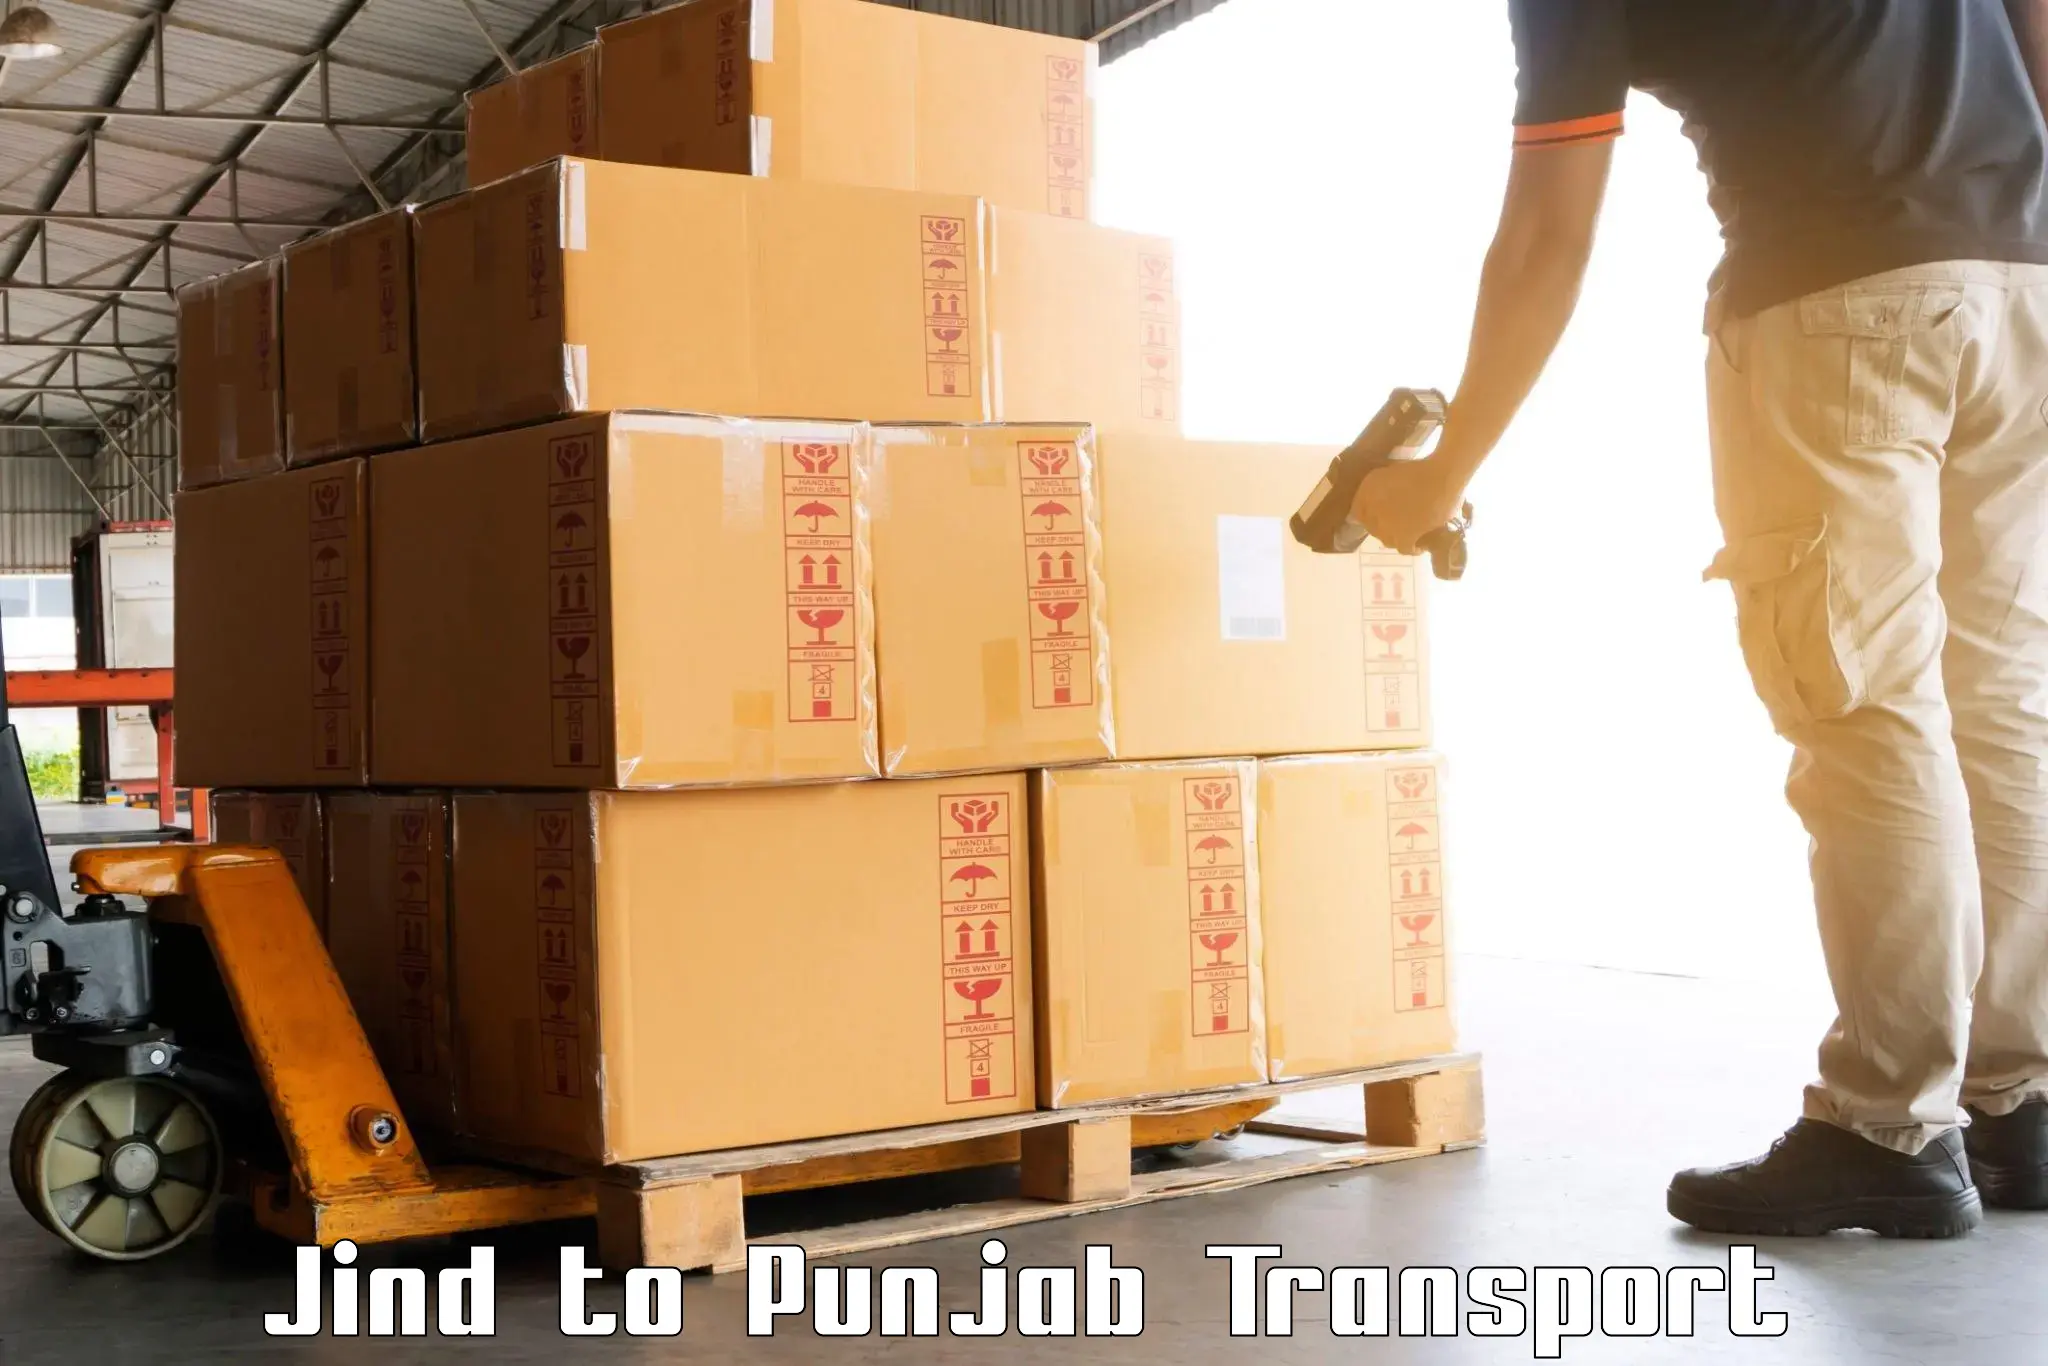 Transportation solution services Jind to Punjab